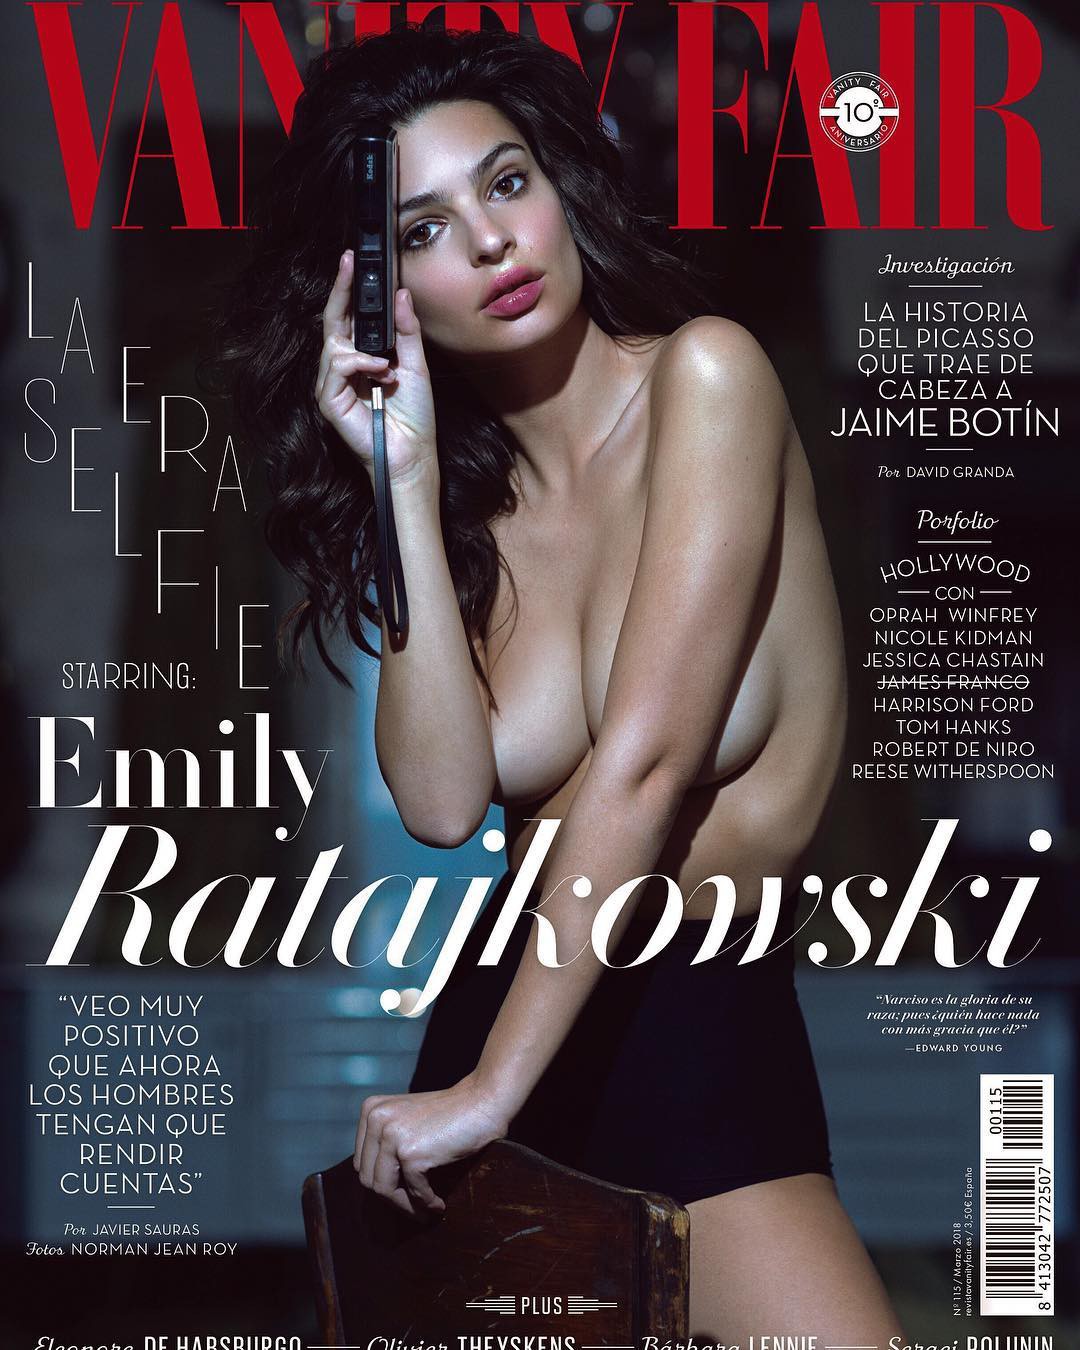 Emily Ratajkowski - Mỹ nhân siêu vòng 1 thích khoe ảnh nóng đang hot điên đảo mạng xã hội hiện nay - Ảnh 1.